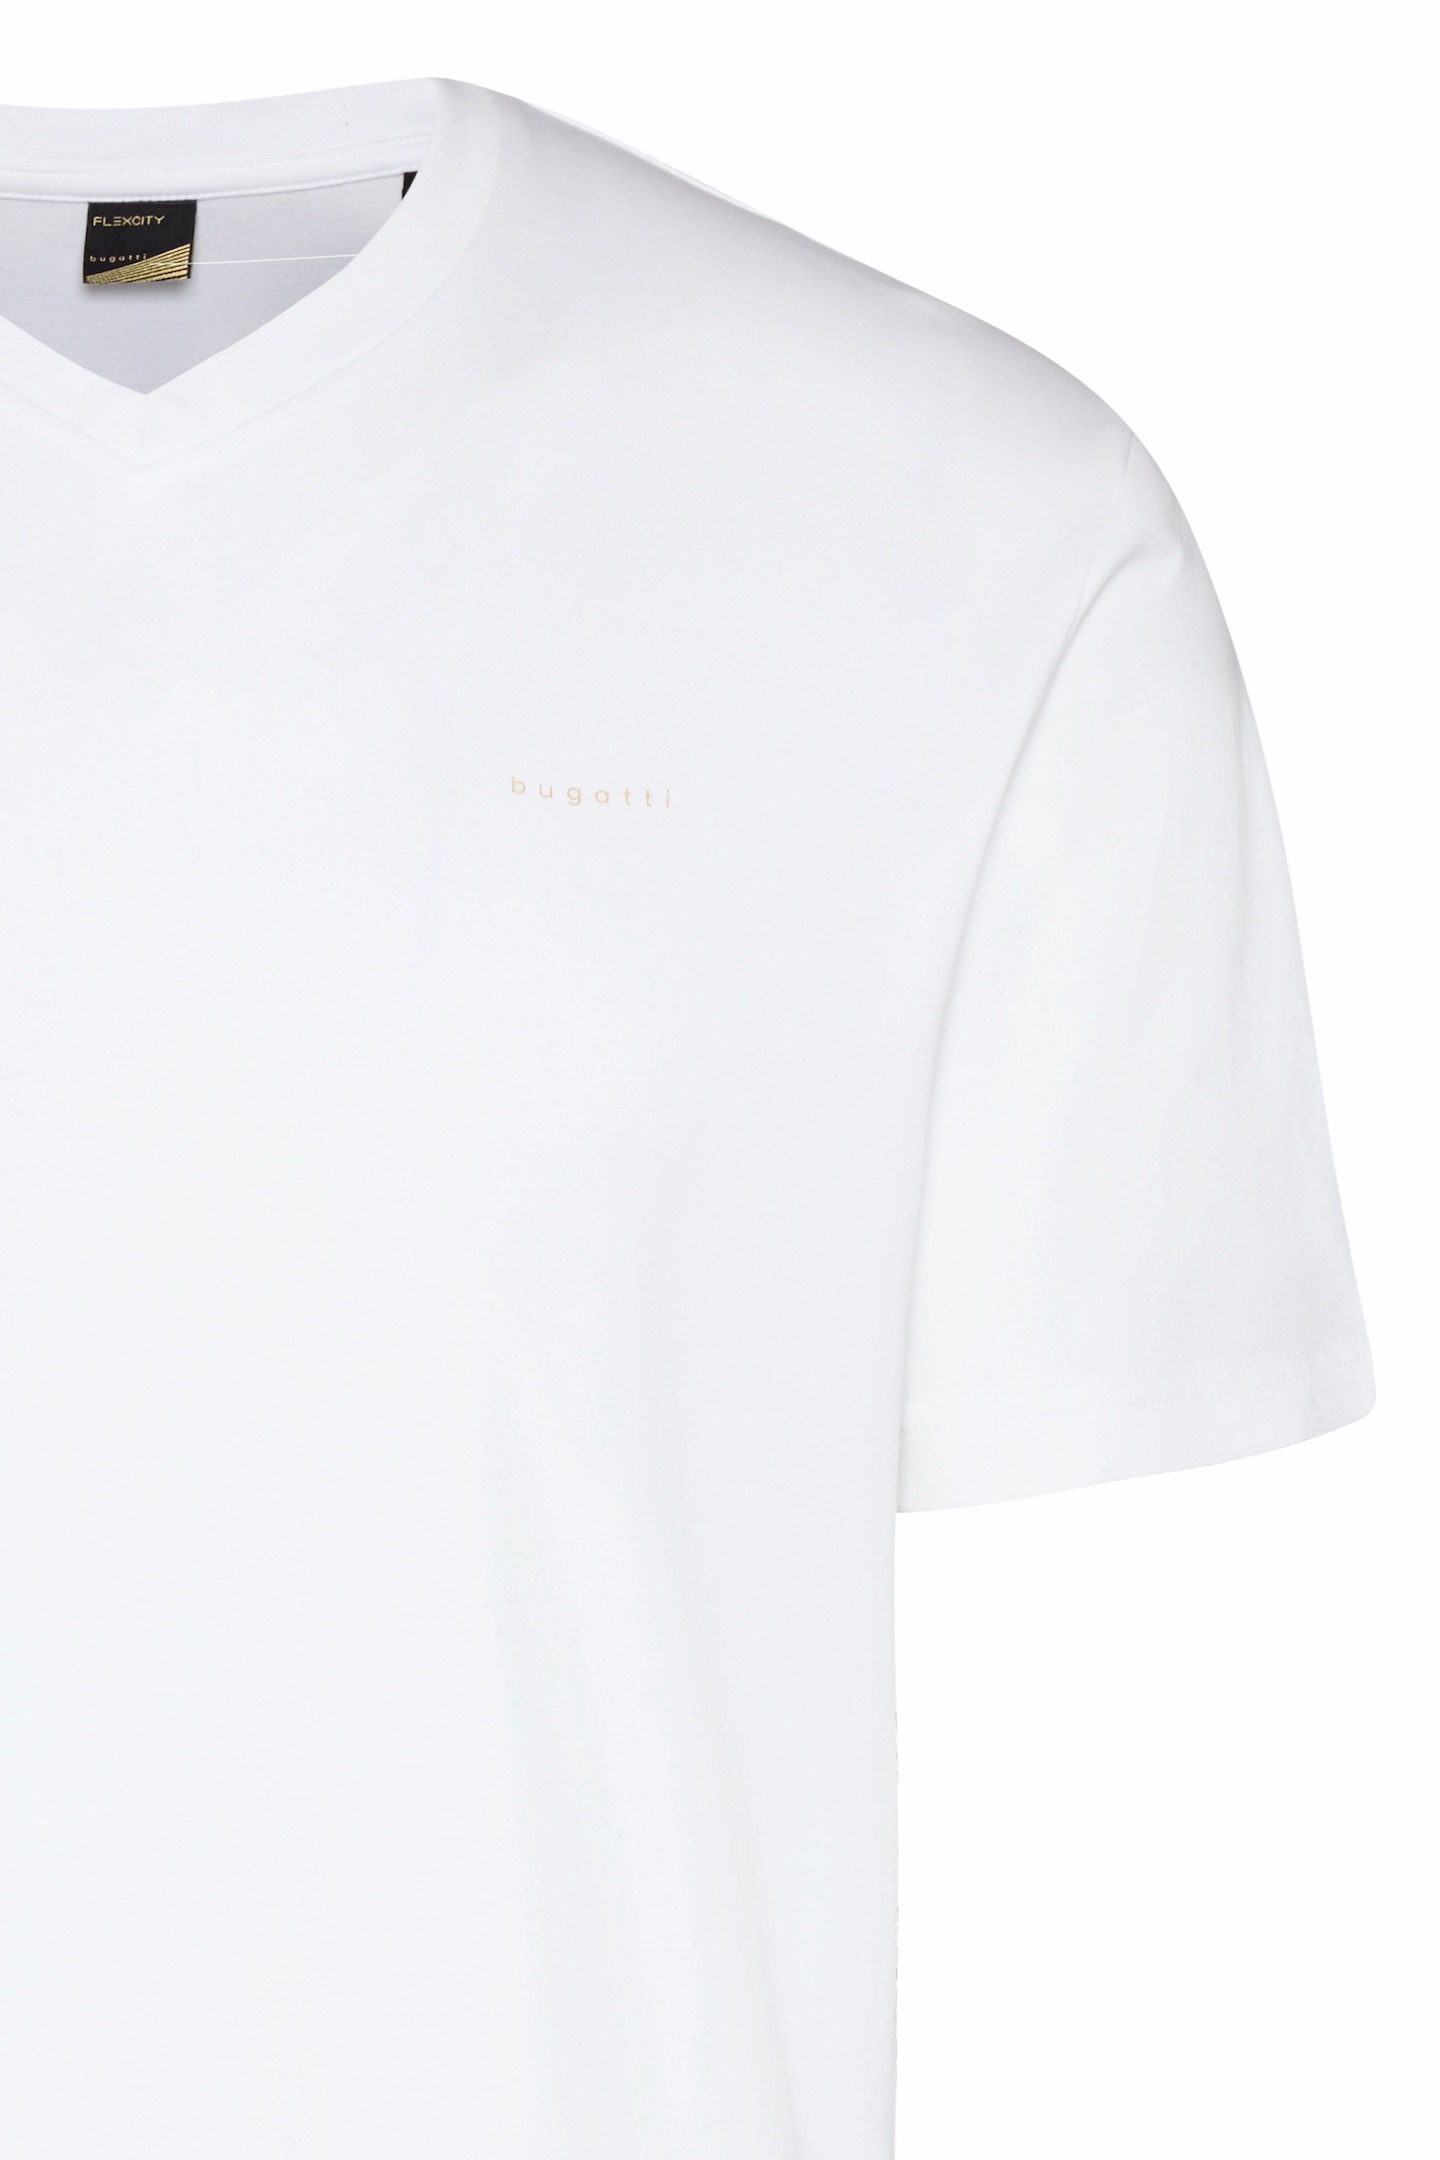 ♕ bugatti auf mit T-Shirt, versandkostenfrei V-Ausschnitt